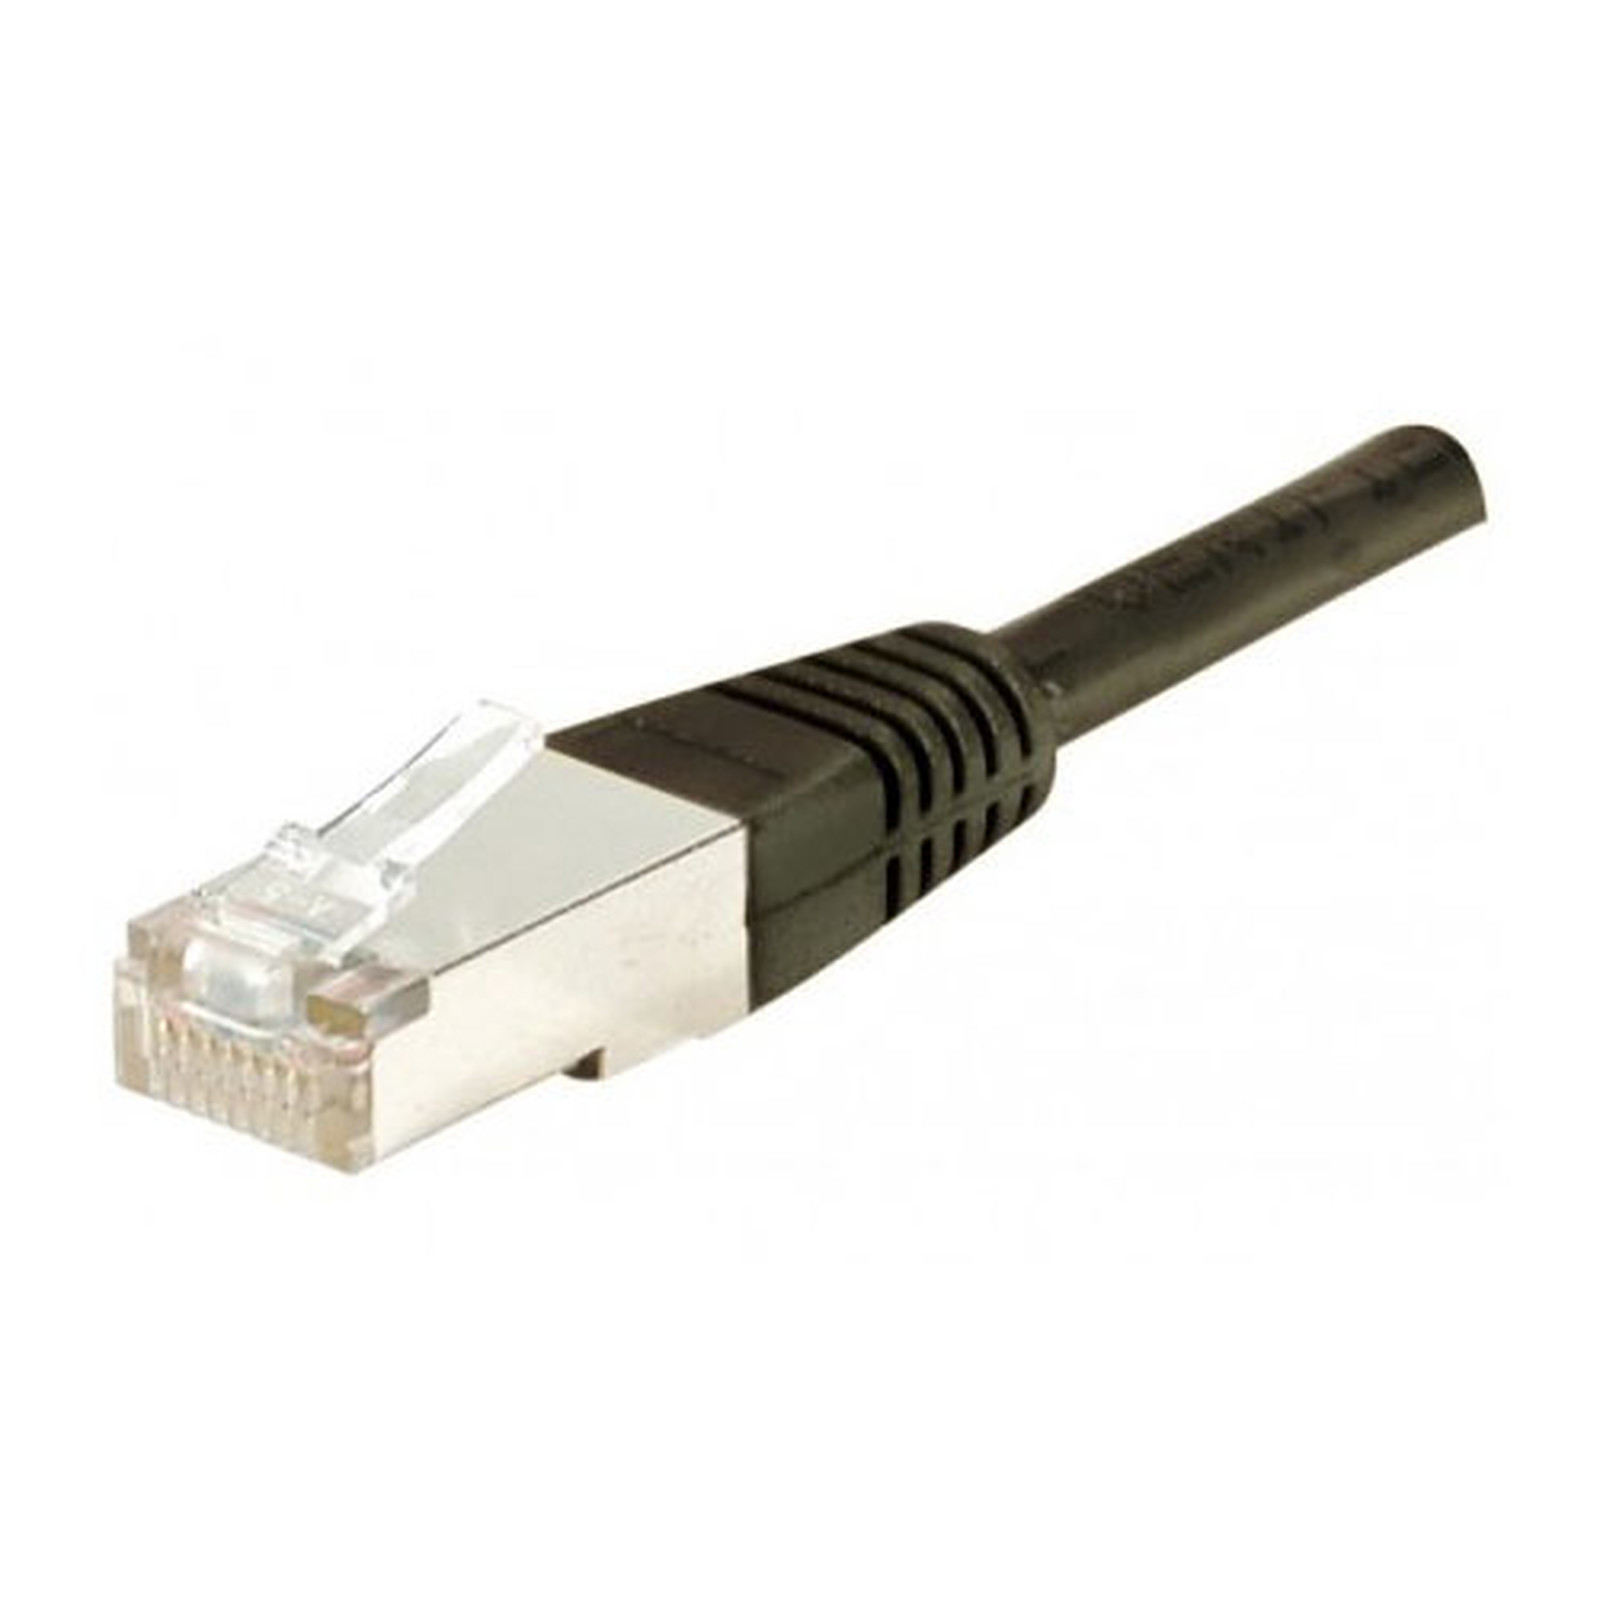 Cable RJ45 categorie 5e F/UTP 3 m (Noir) - Cable RJ45 Generique